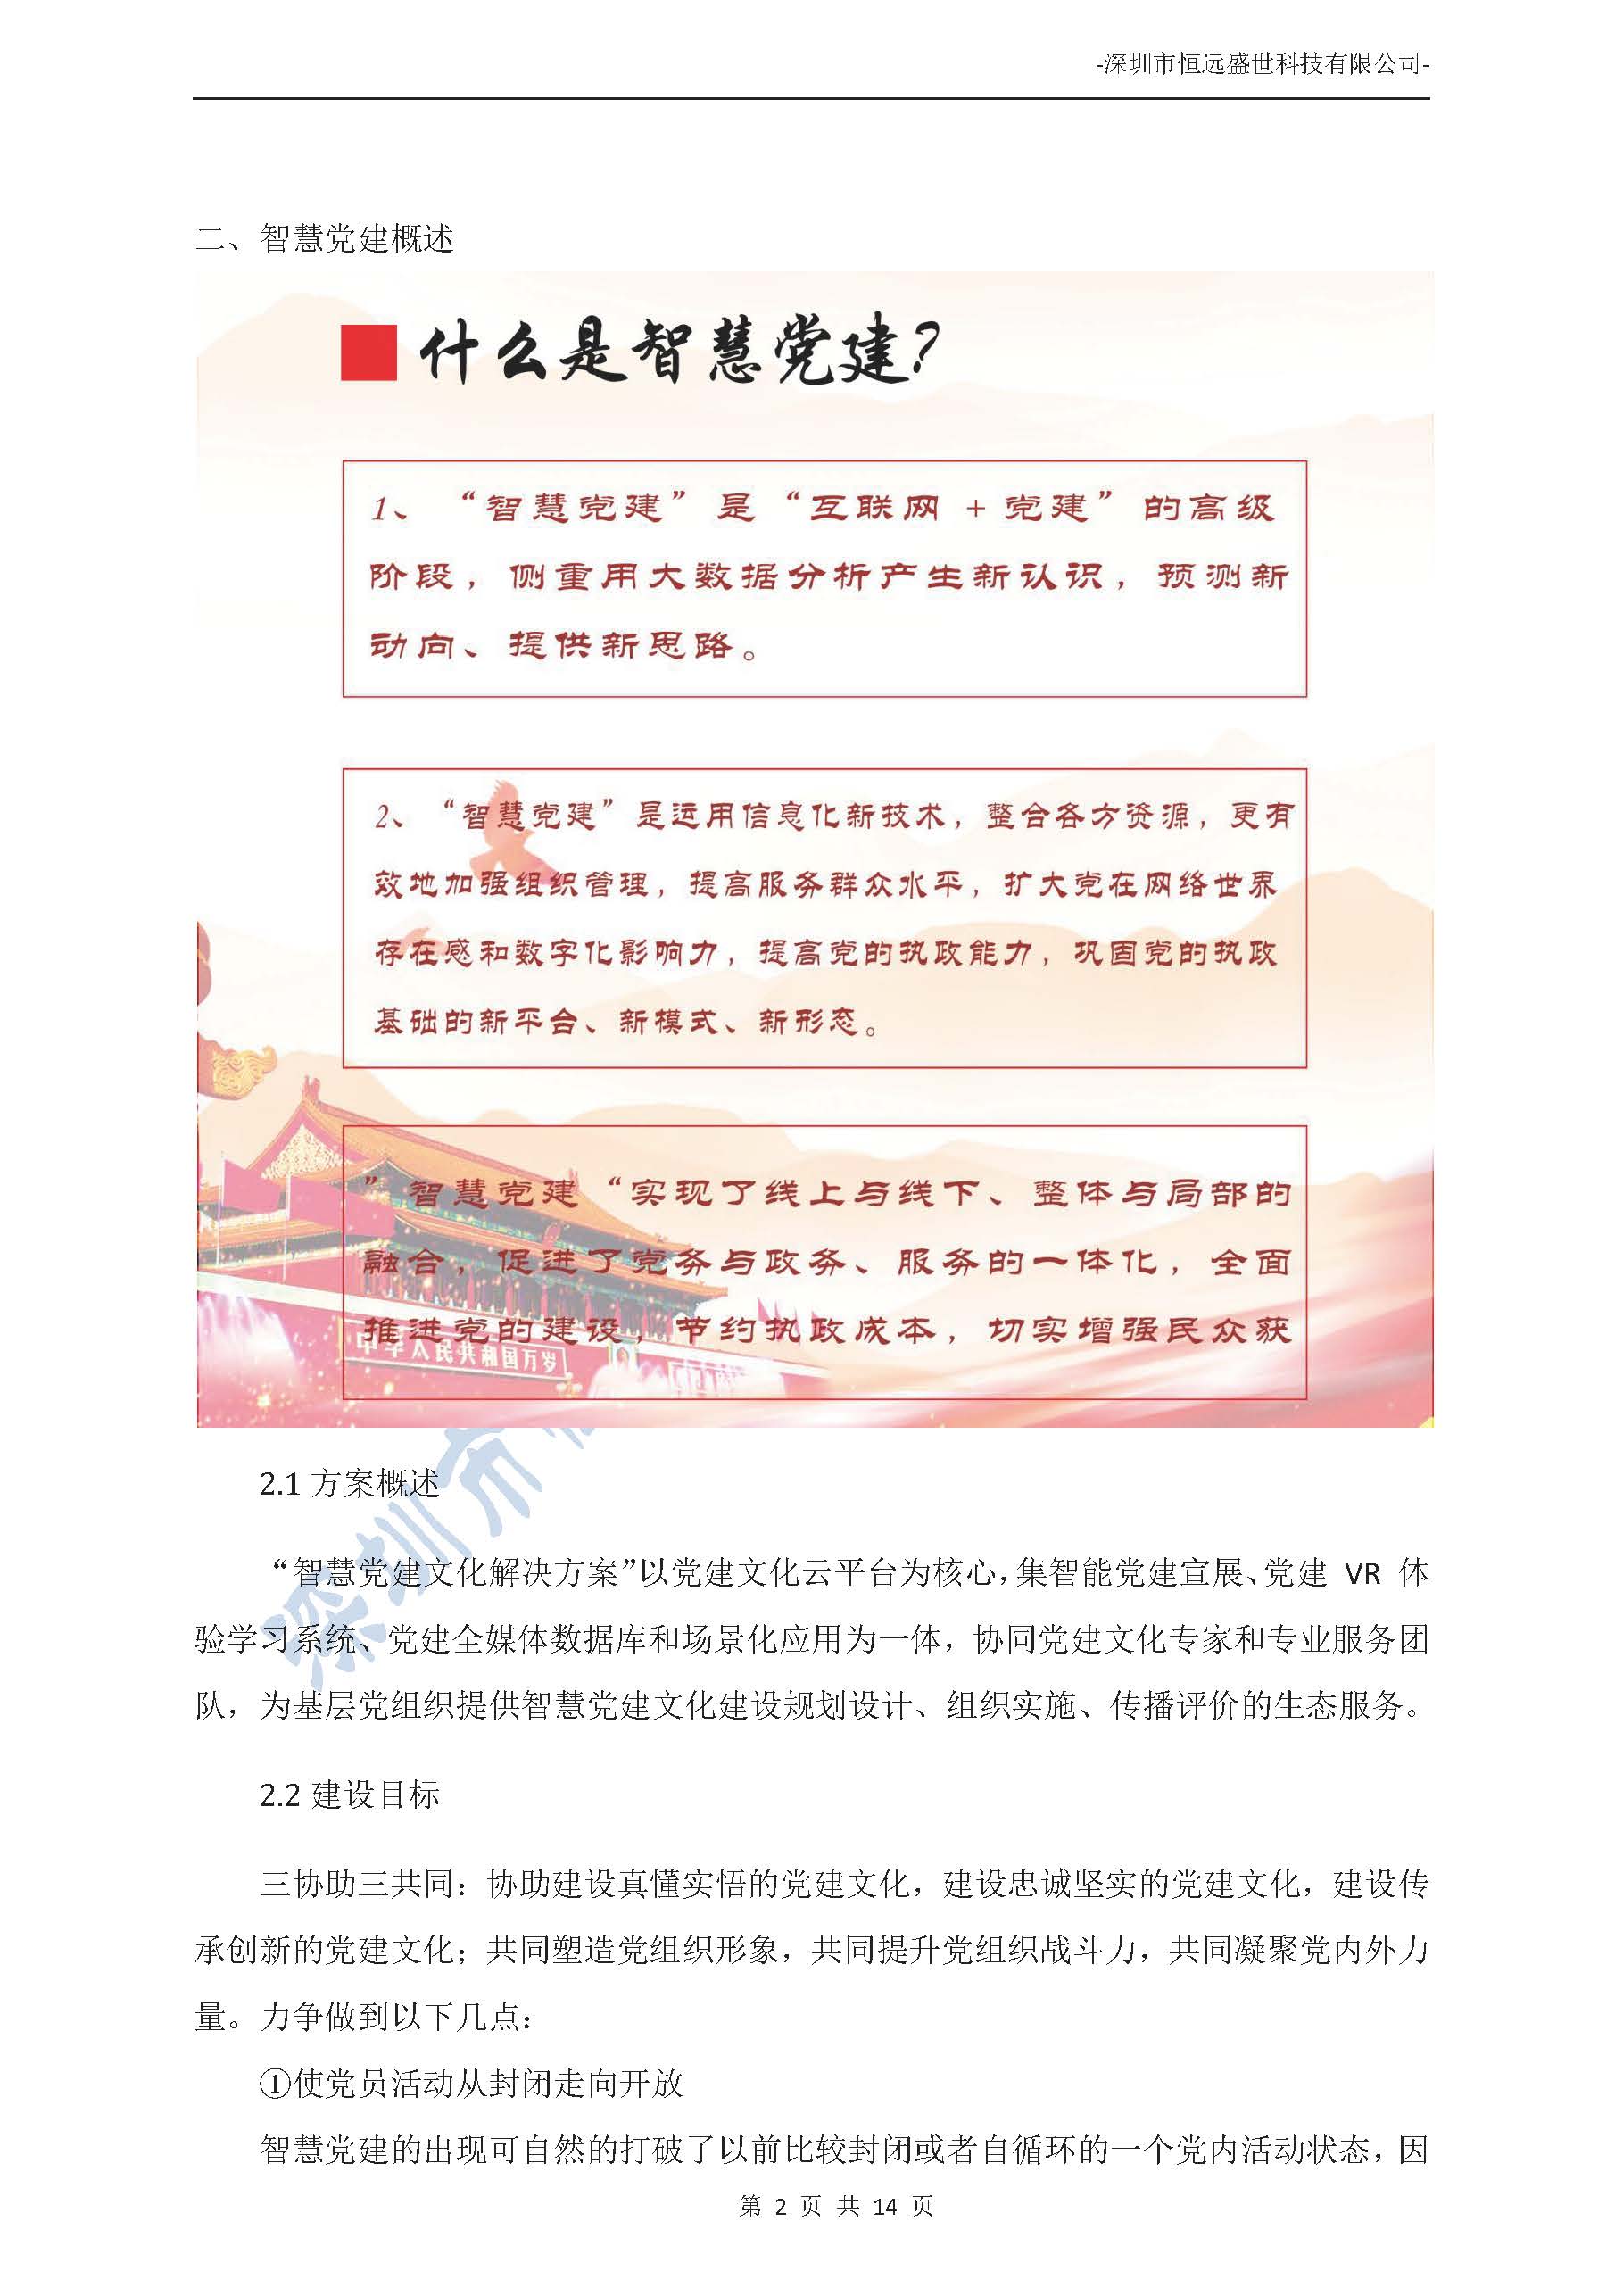 智慧党建项目方案介绍-深圳市恒远盛世科技有限公司